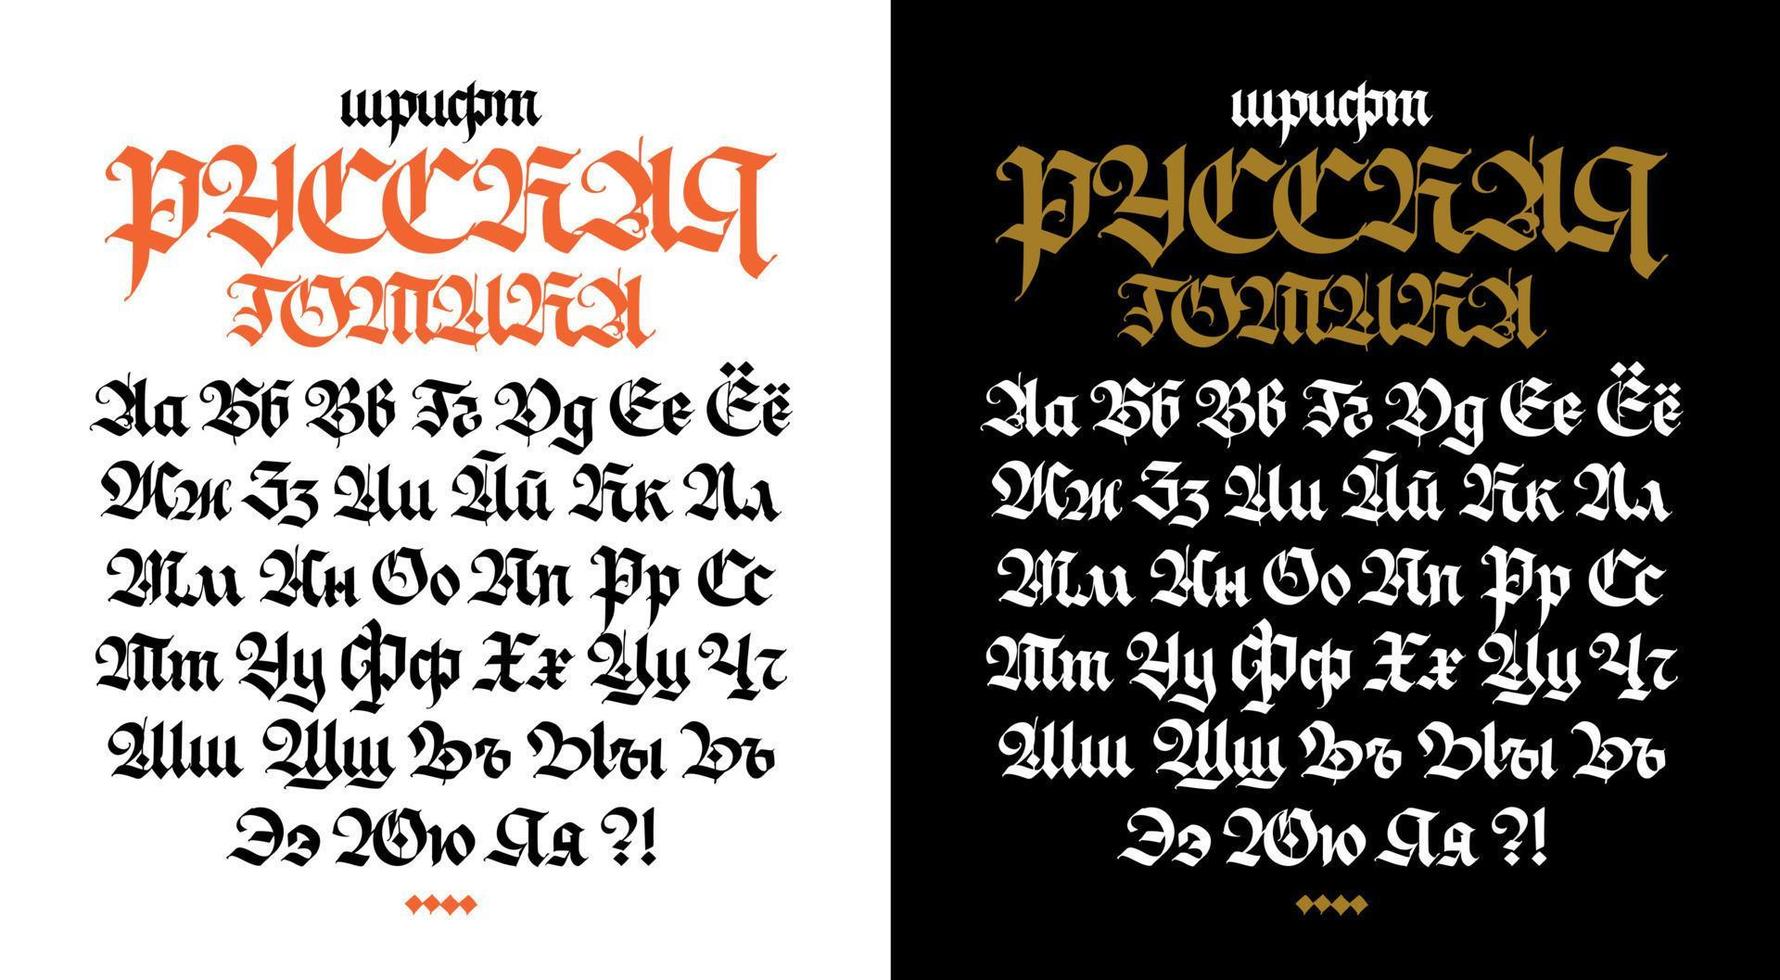 Russische gotische lettertype. vector. de inscriptie is in het Russisch. neo-Russische moderne gotiek. alle letters zijn handgeschreven met een pen. middeleeuwse oude Europese stijl. alle letters worden apart opgeslagen. vector